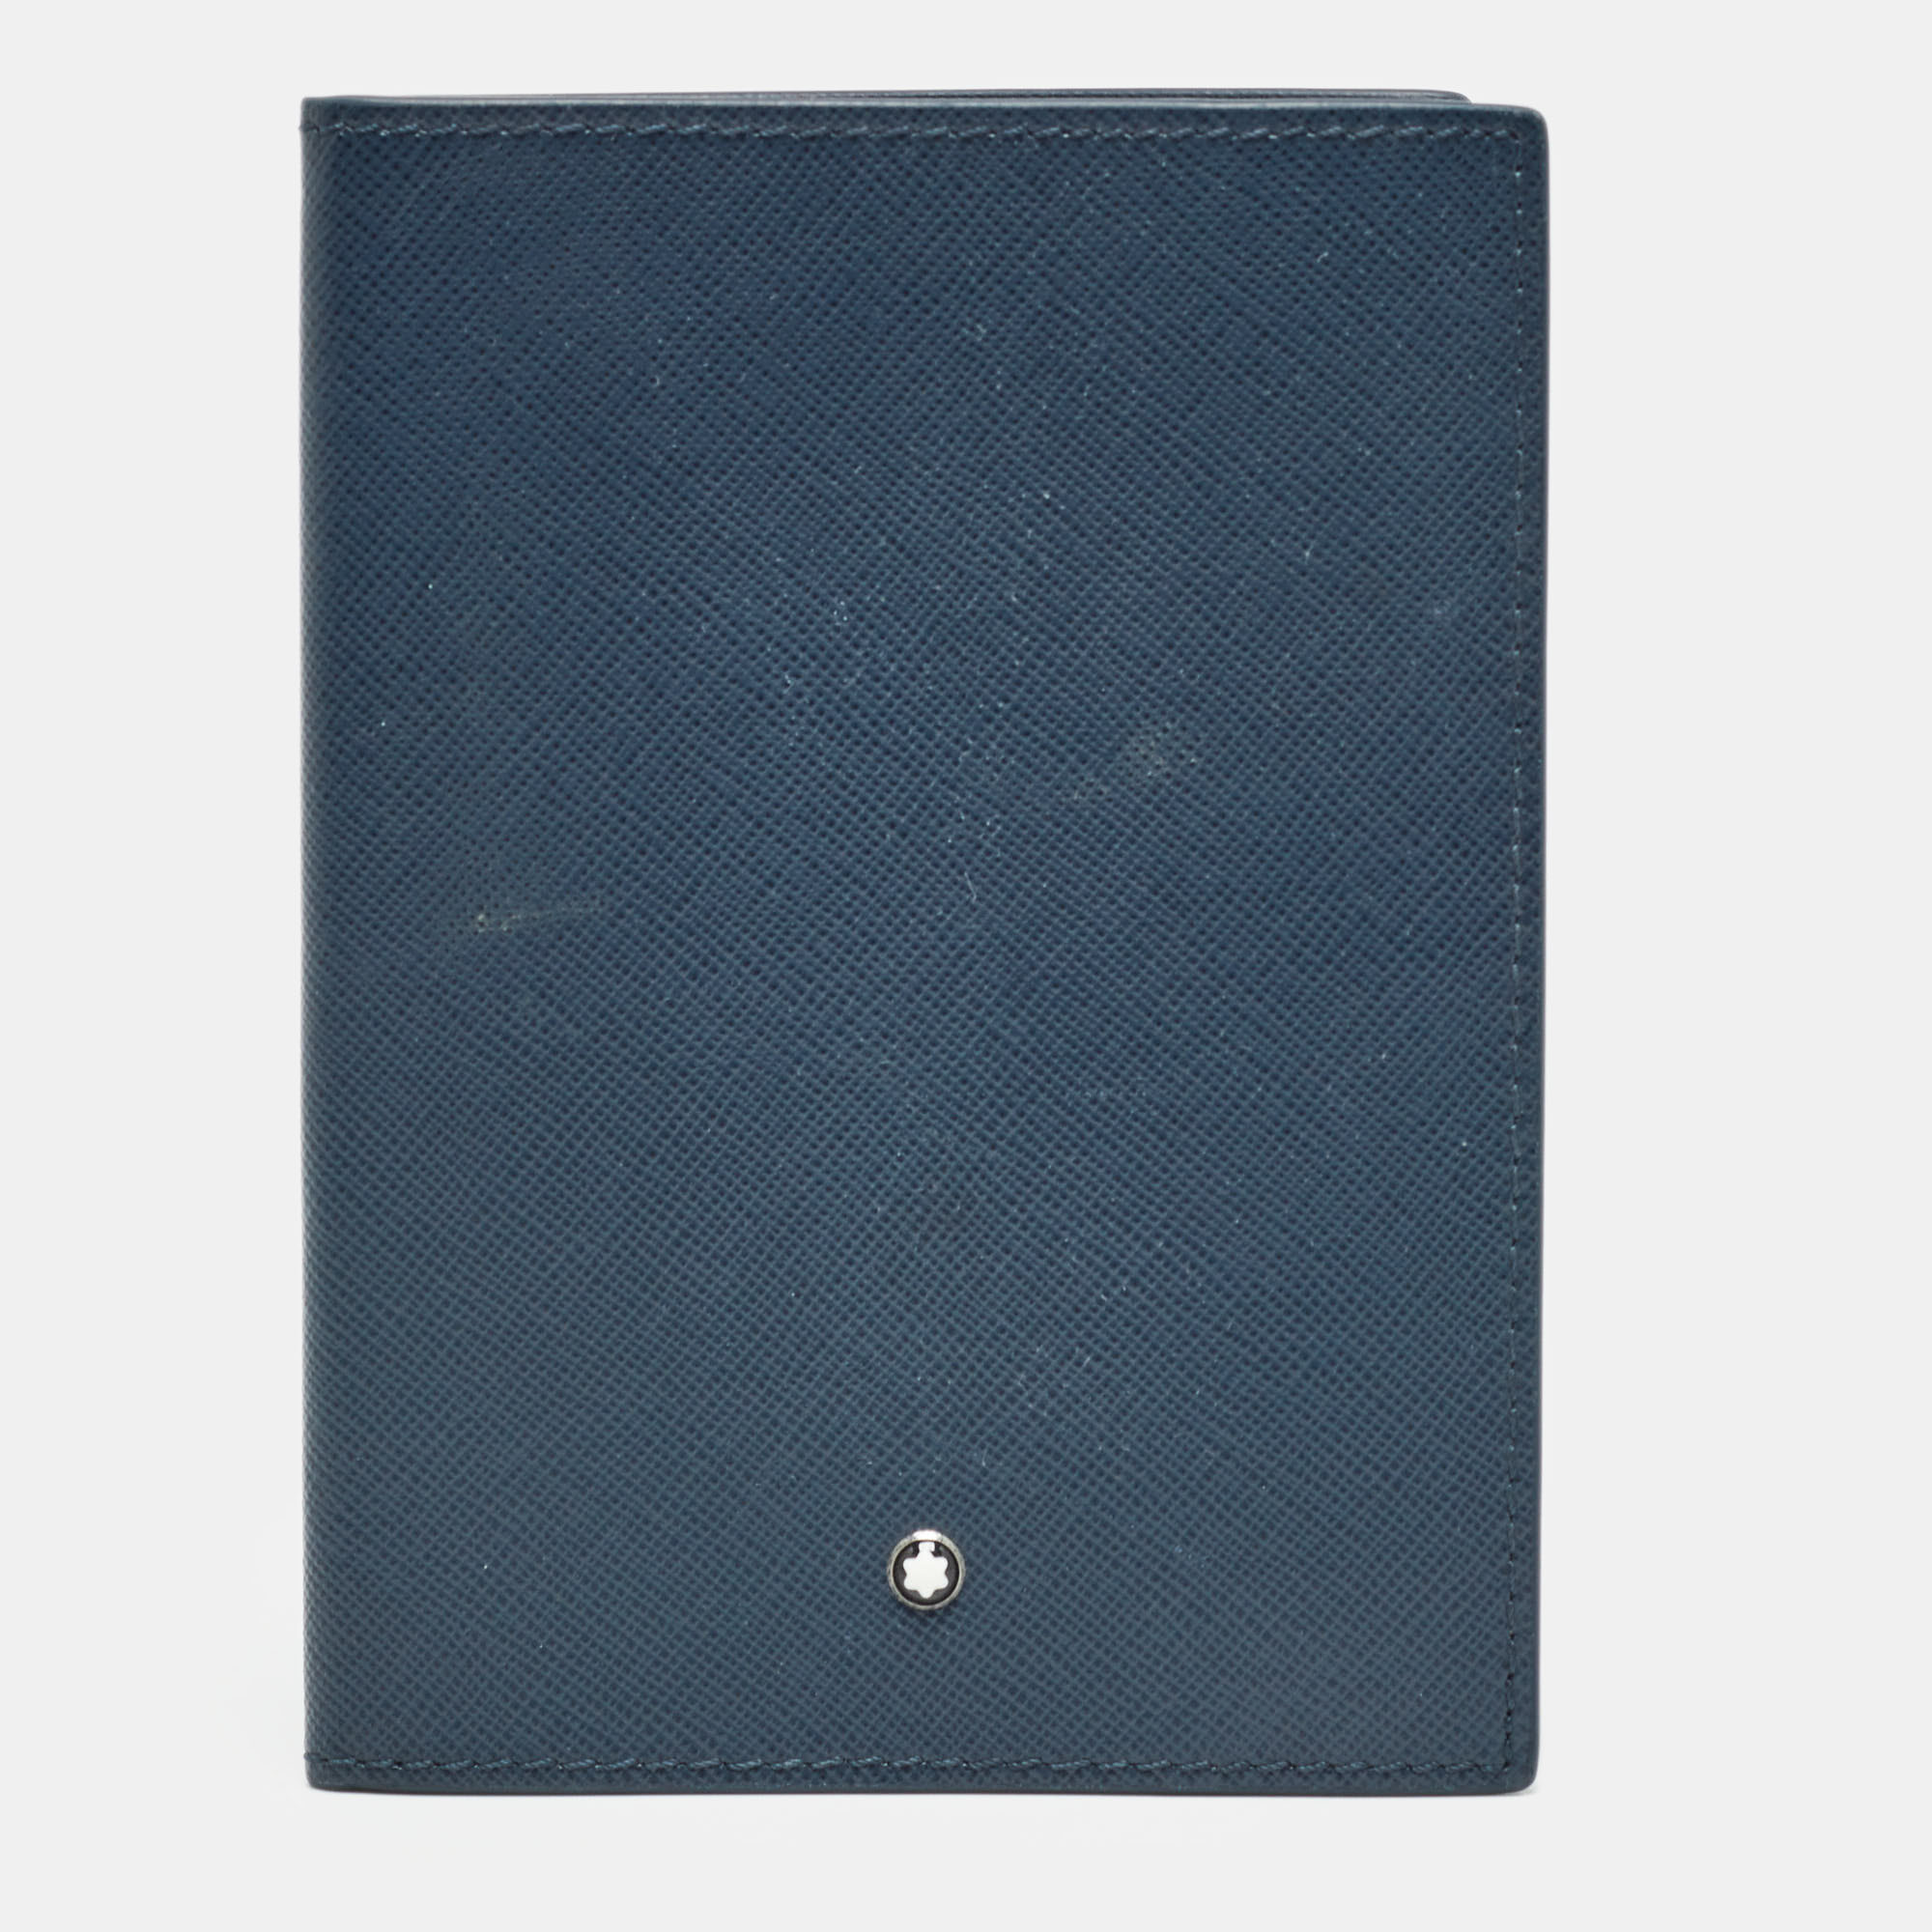 Montblanc navy blue leather sartorial passport holder